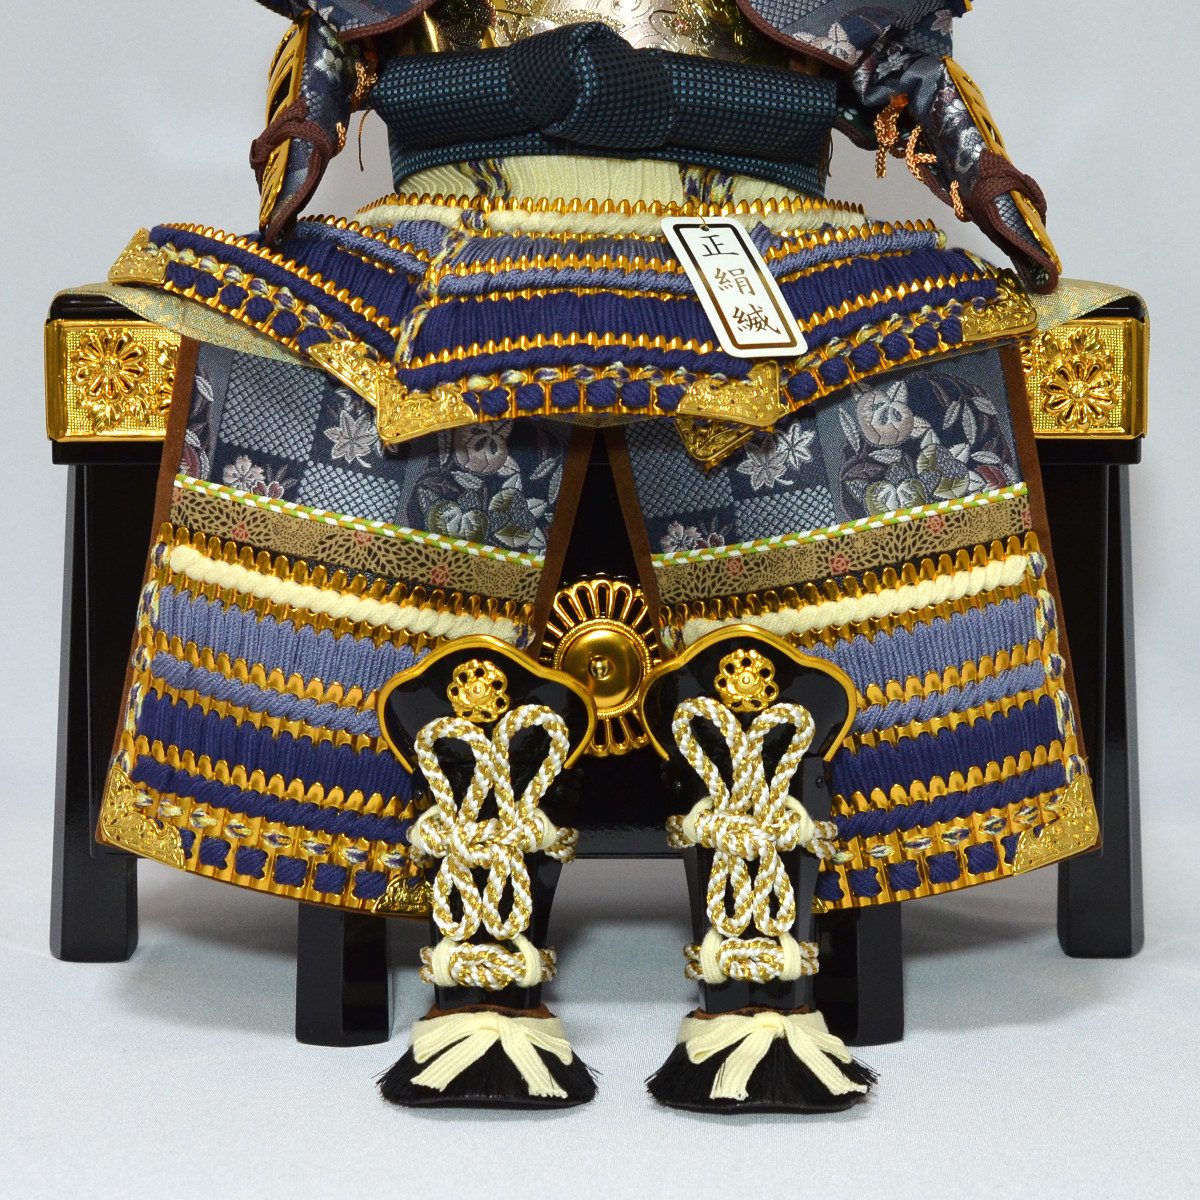 五月人形 コンパクト 鎧飾り 皇宸作 6号 : gn0116 : 人形の三信 - 通販 